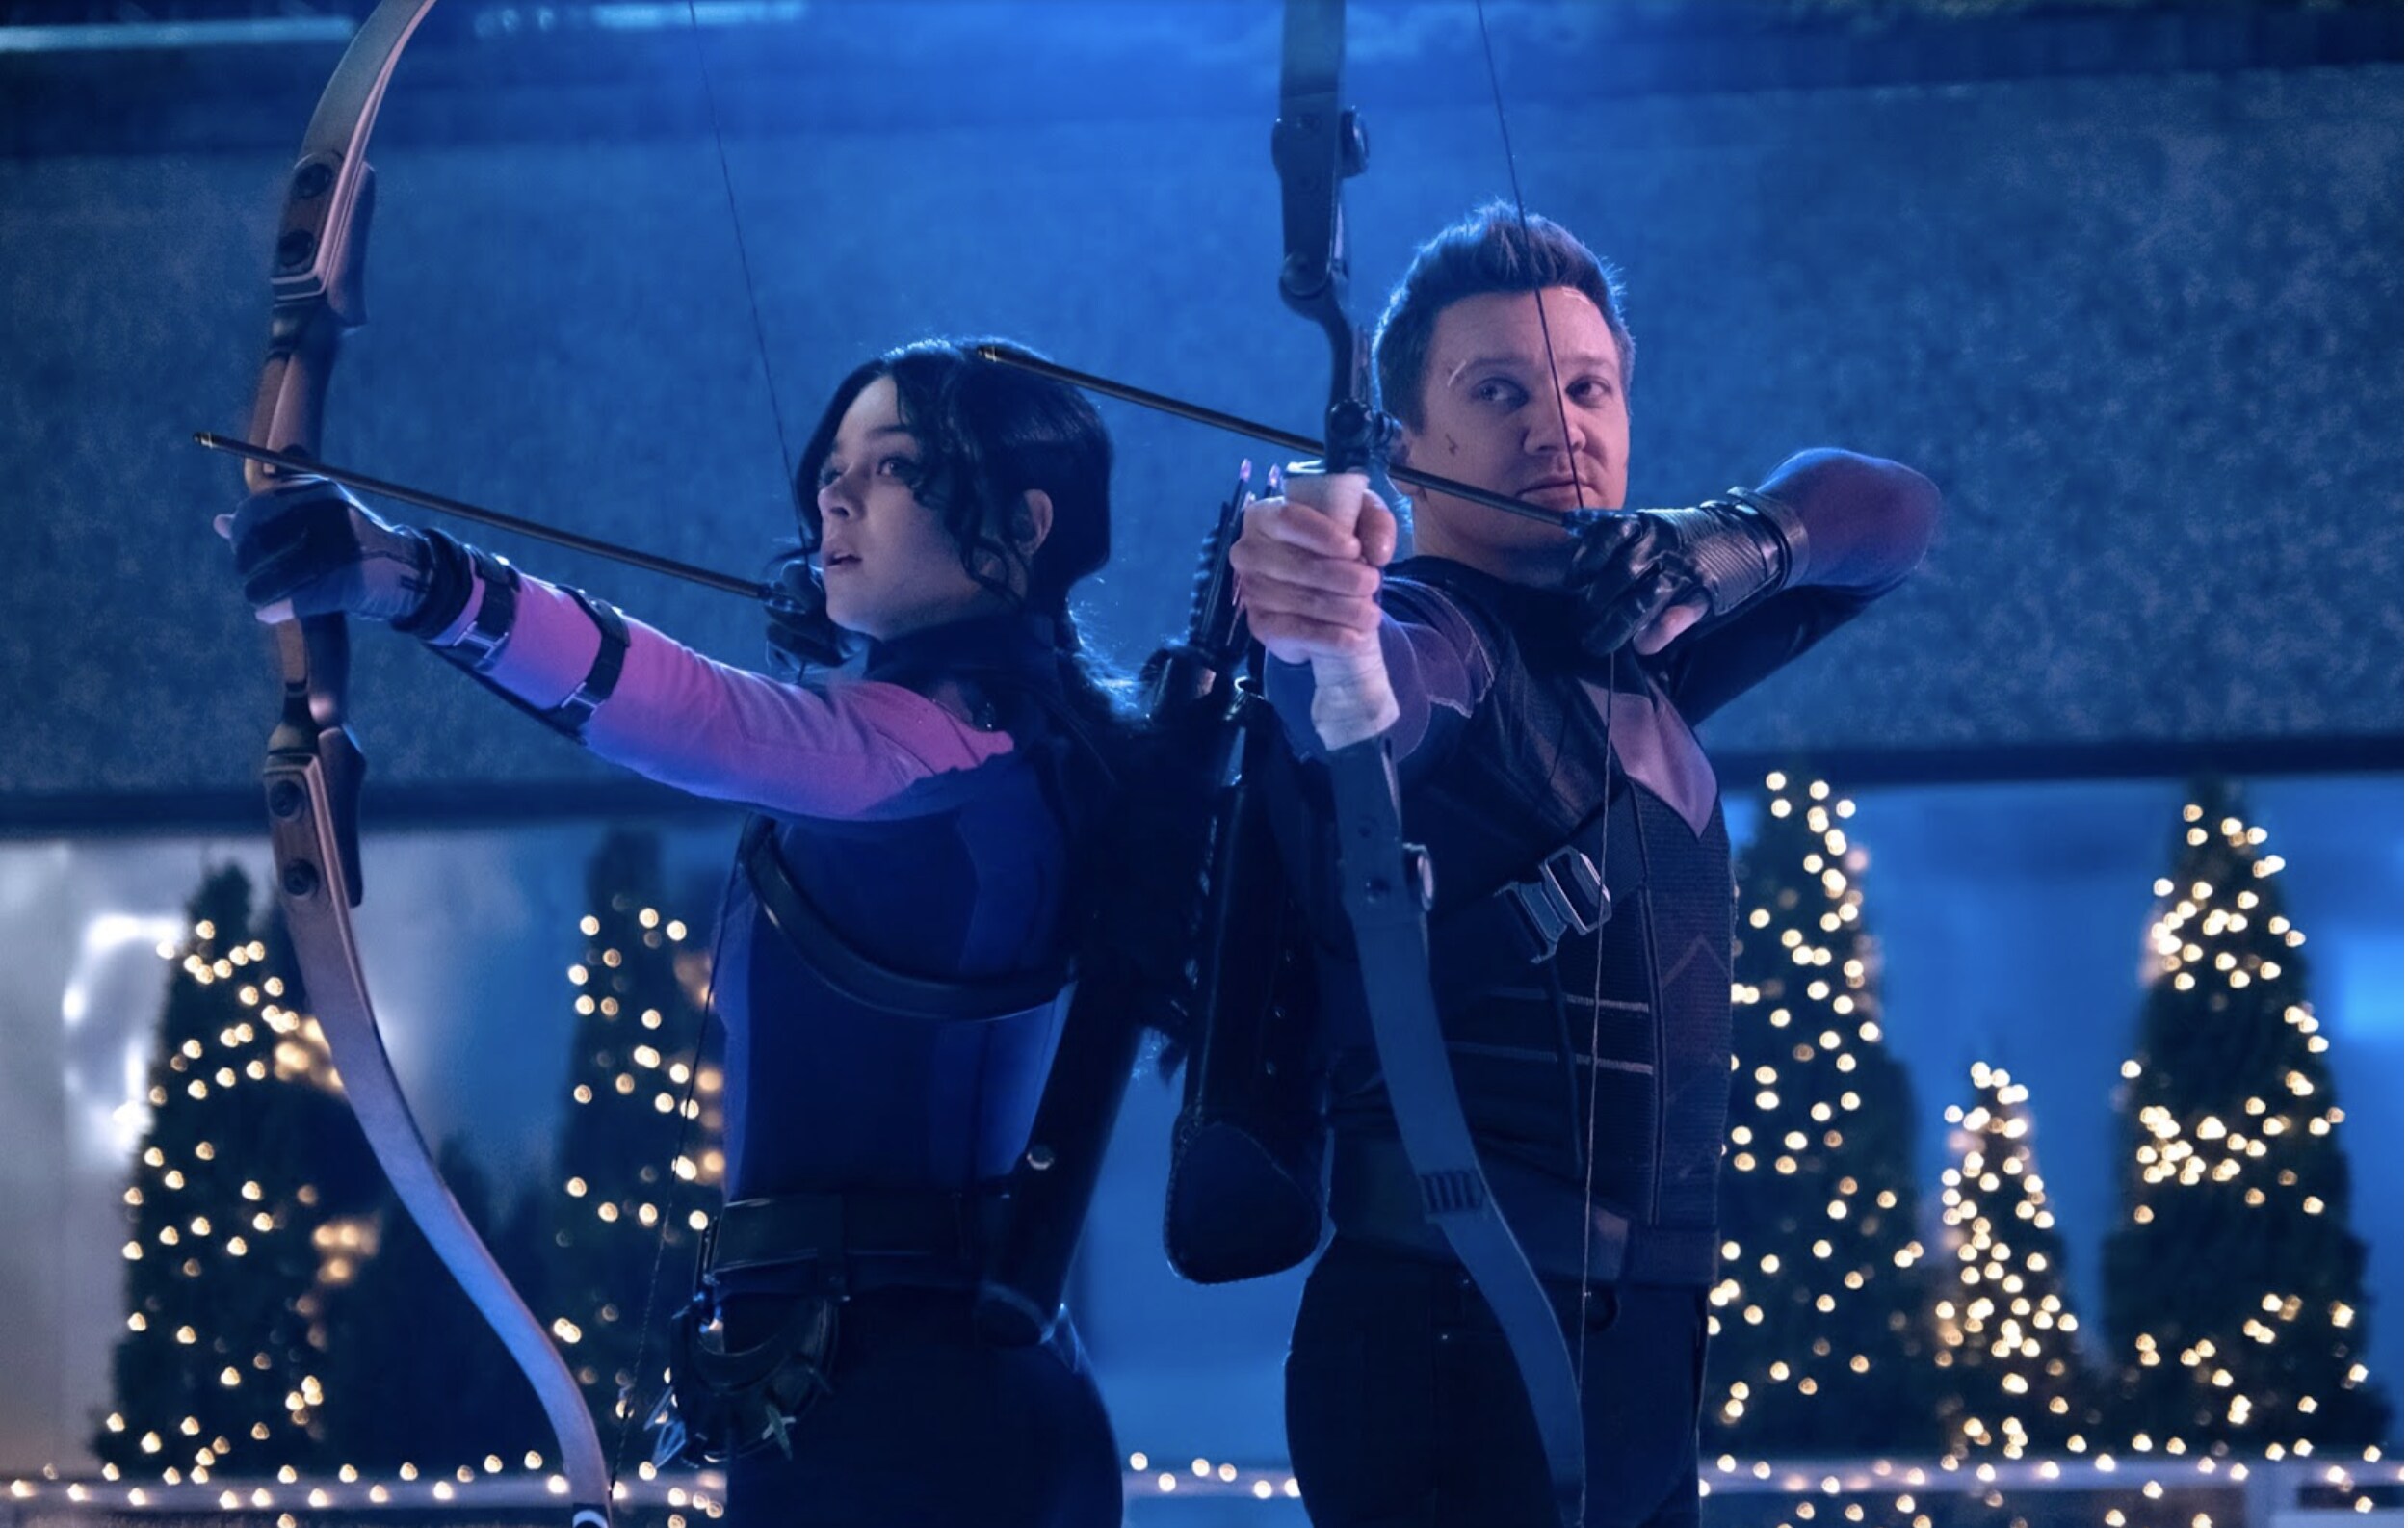 Kate Bishop and Hawkeye aim their arrows in Disney+ new original series Hawkeye 